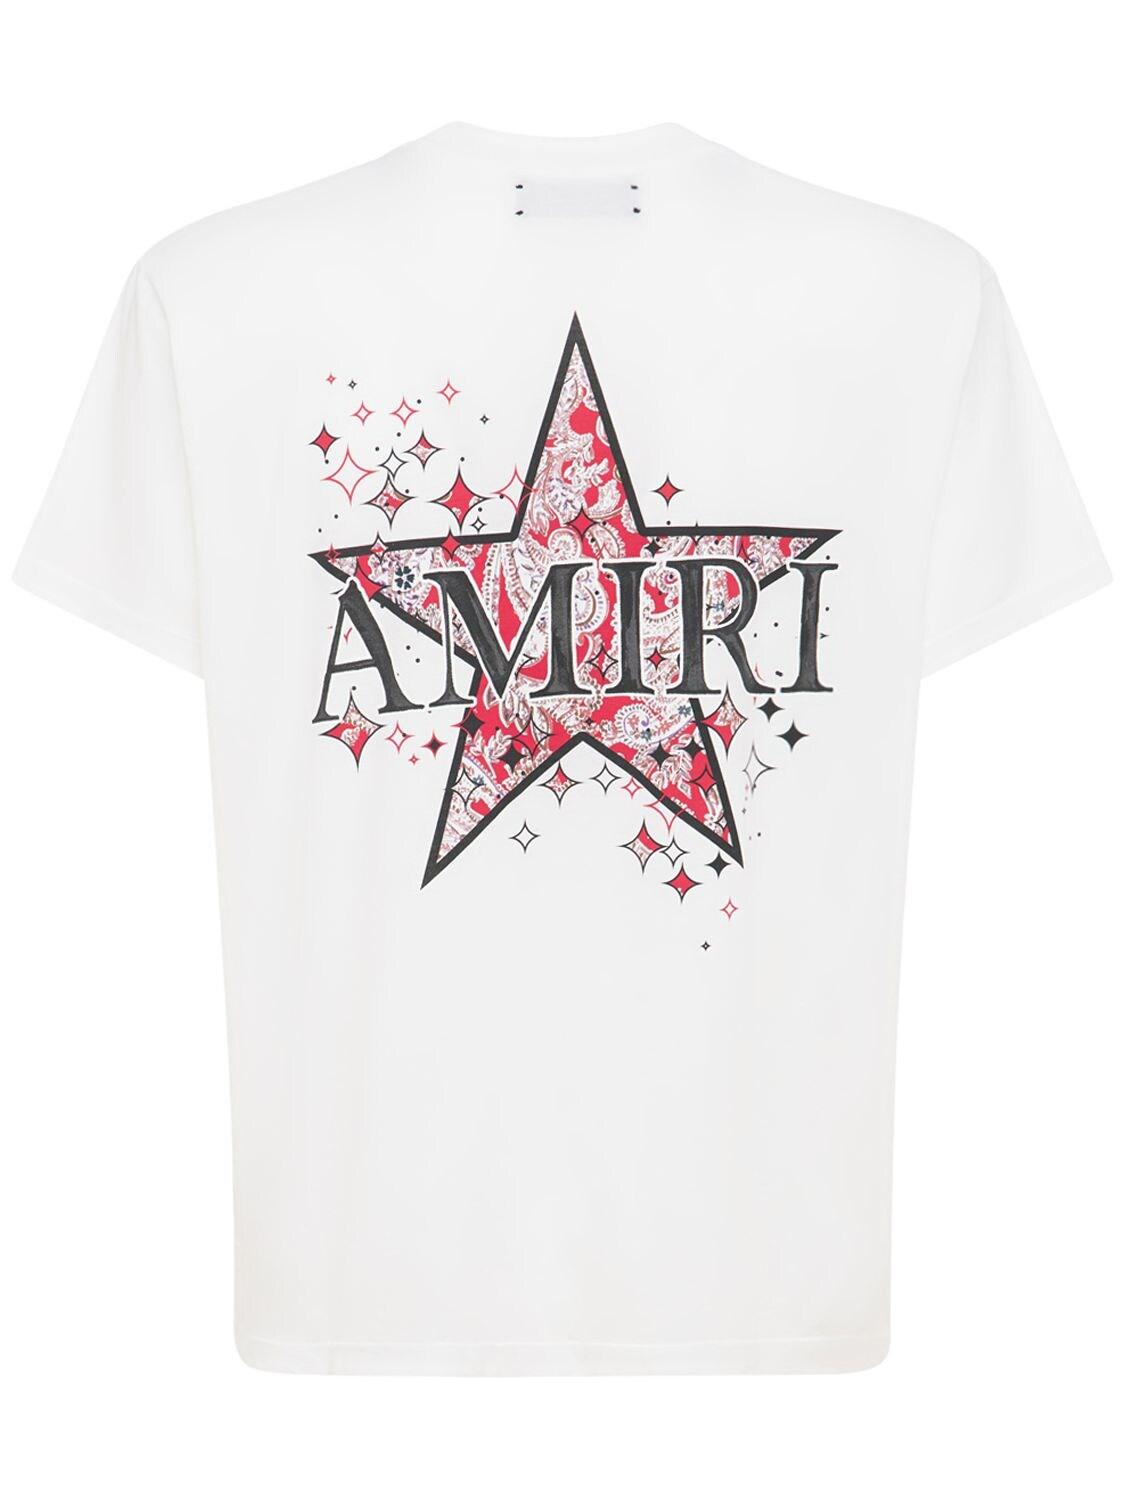 Amiri T shirt New Series